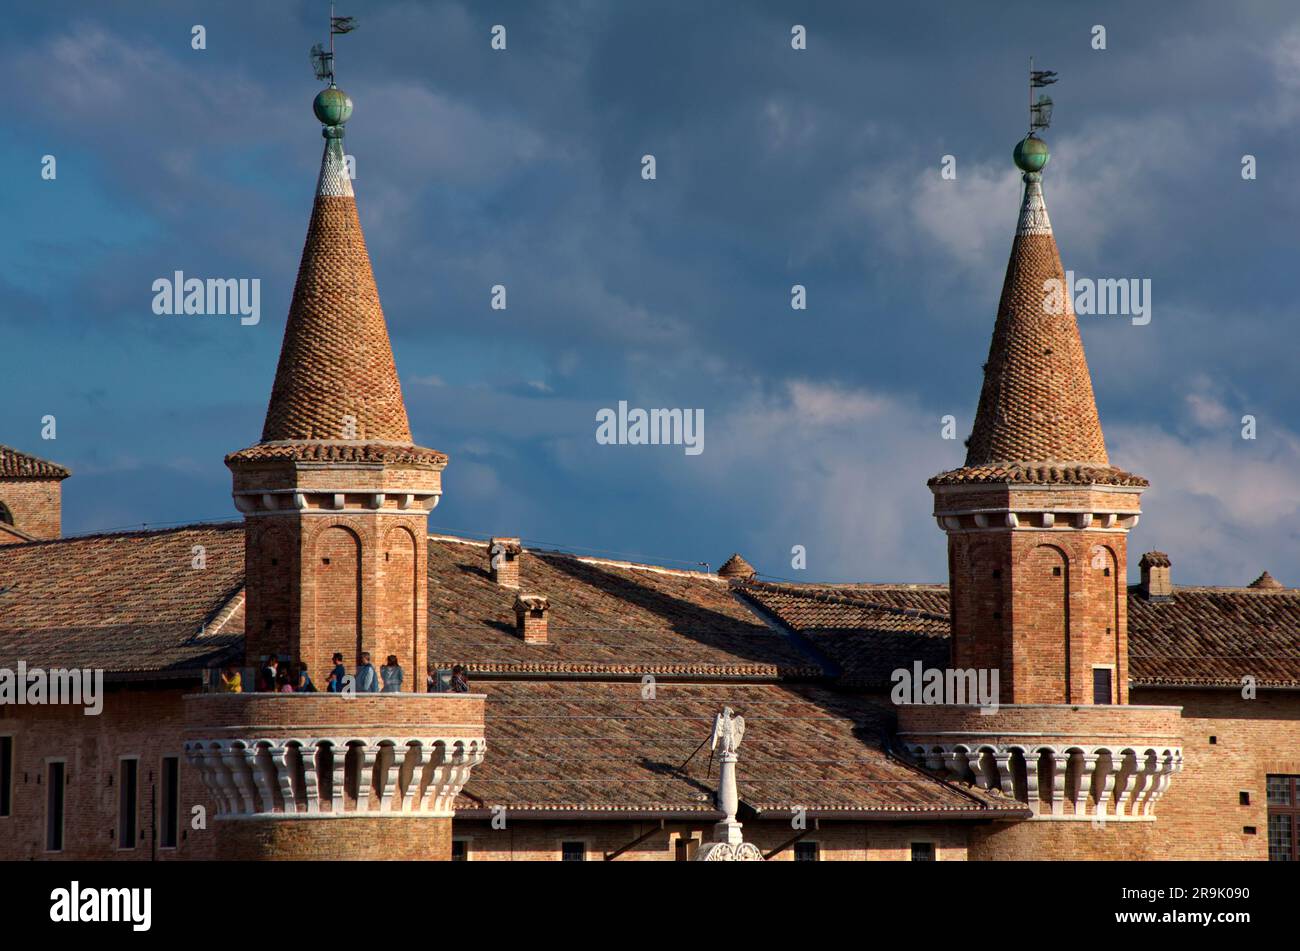 Participolare del Palazzo ducale di Urbino Stockfoto